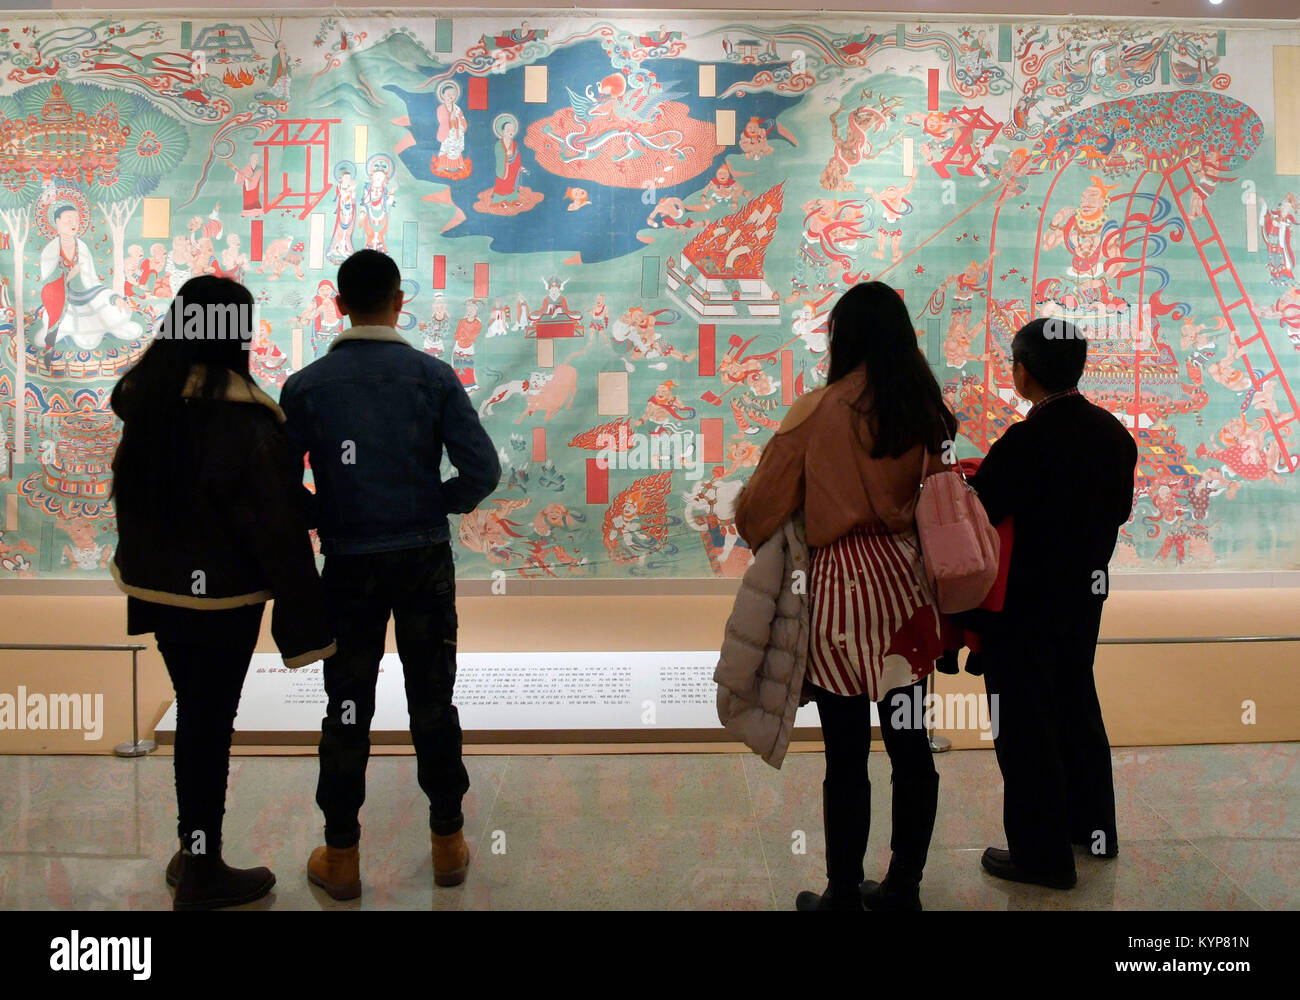 Pechino, Cina. 16 gennaio, 2018. Visitatori visualizza un dipinto durante la Zhang Daqian mostra d'Arte a Pechino Capitale della Cina, gen. 16, 2018. Più di 100 serie di dipinti sono in mostra qui. Credito: Jin Liangkuai/Xinhua/Alamy Live News Foto Stock